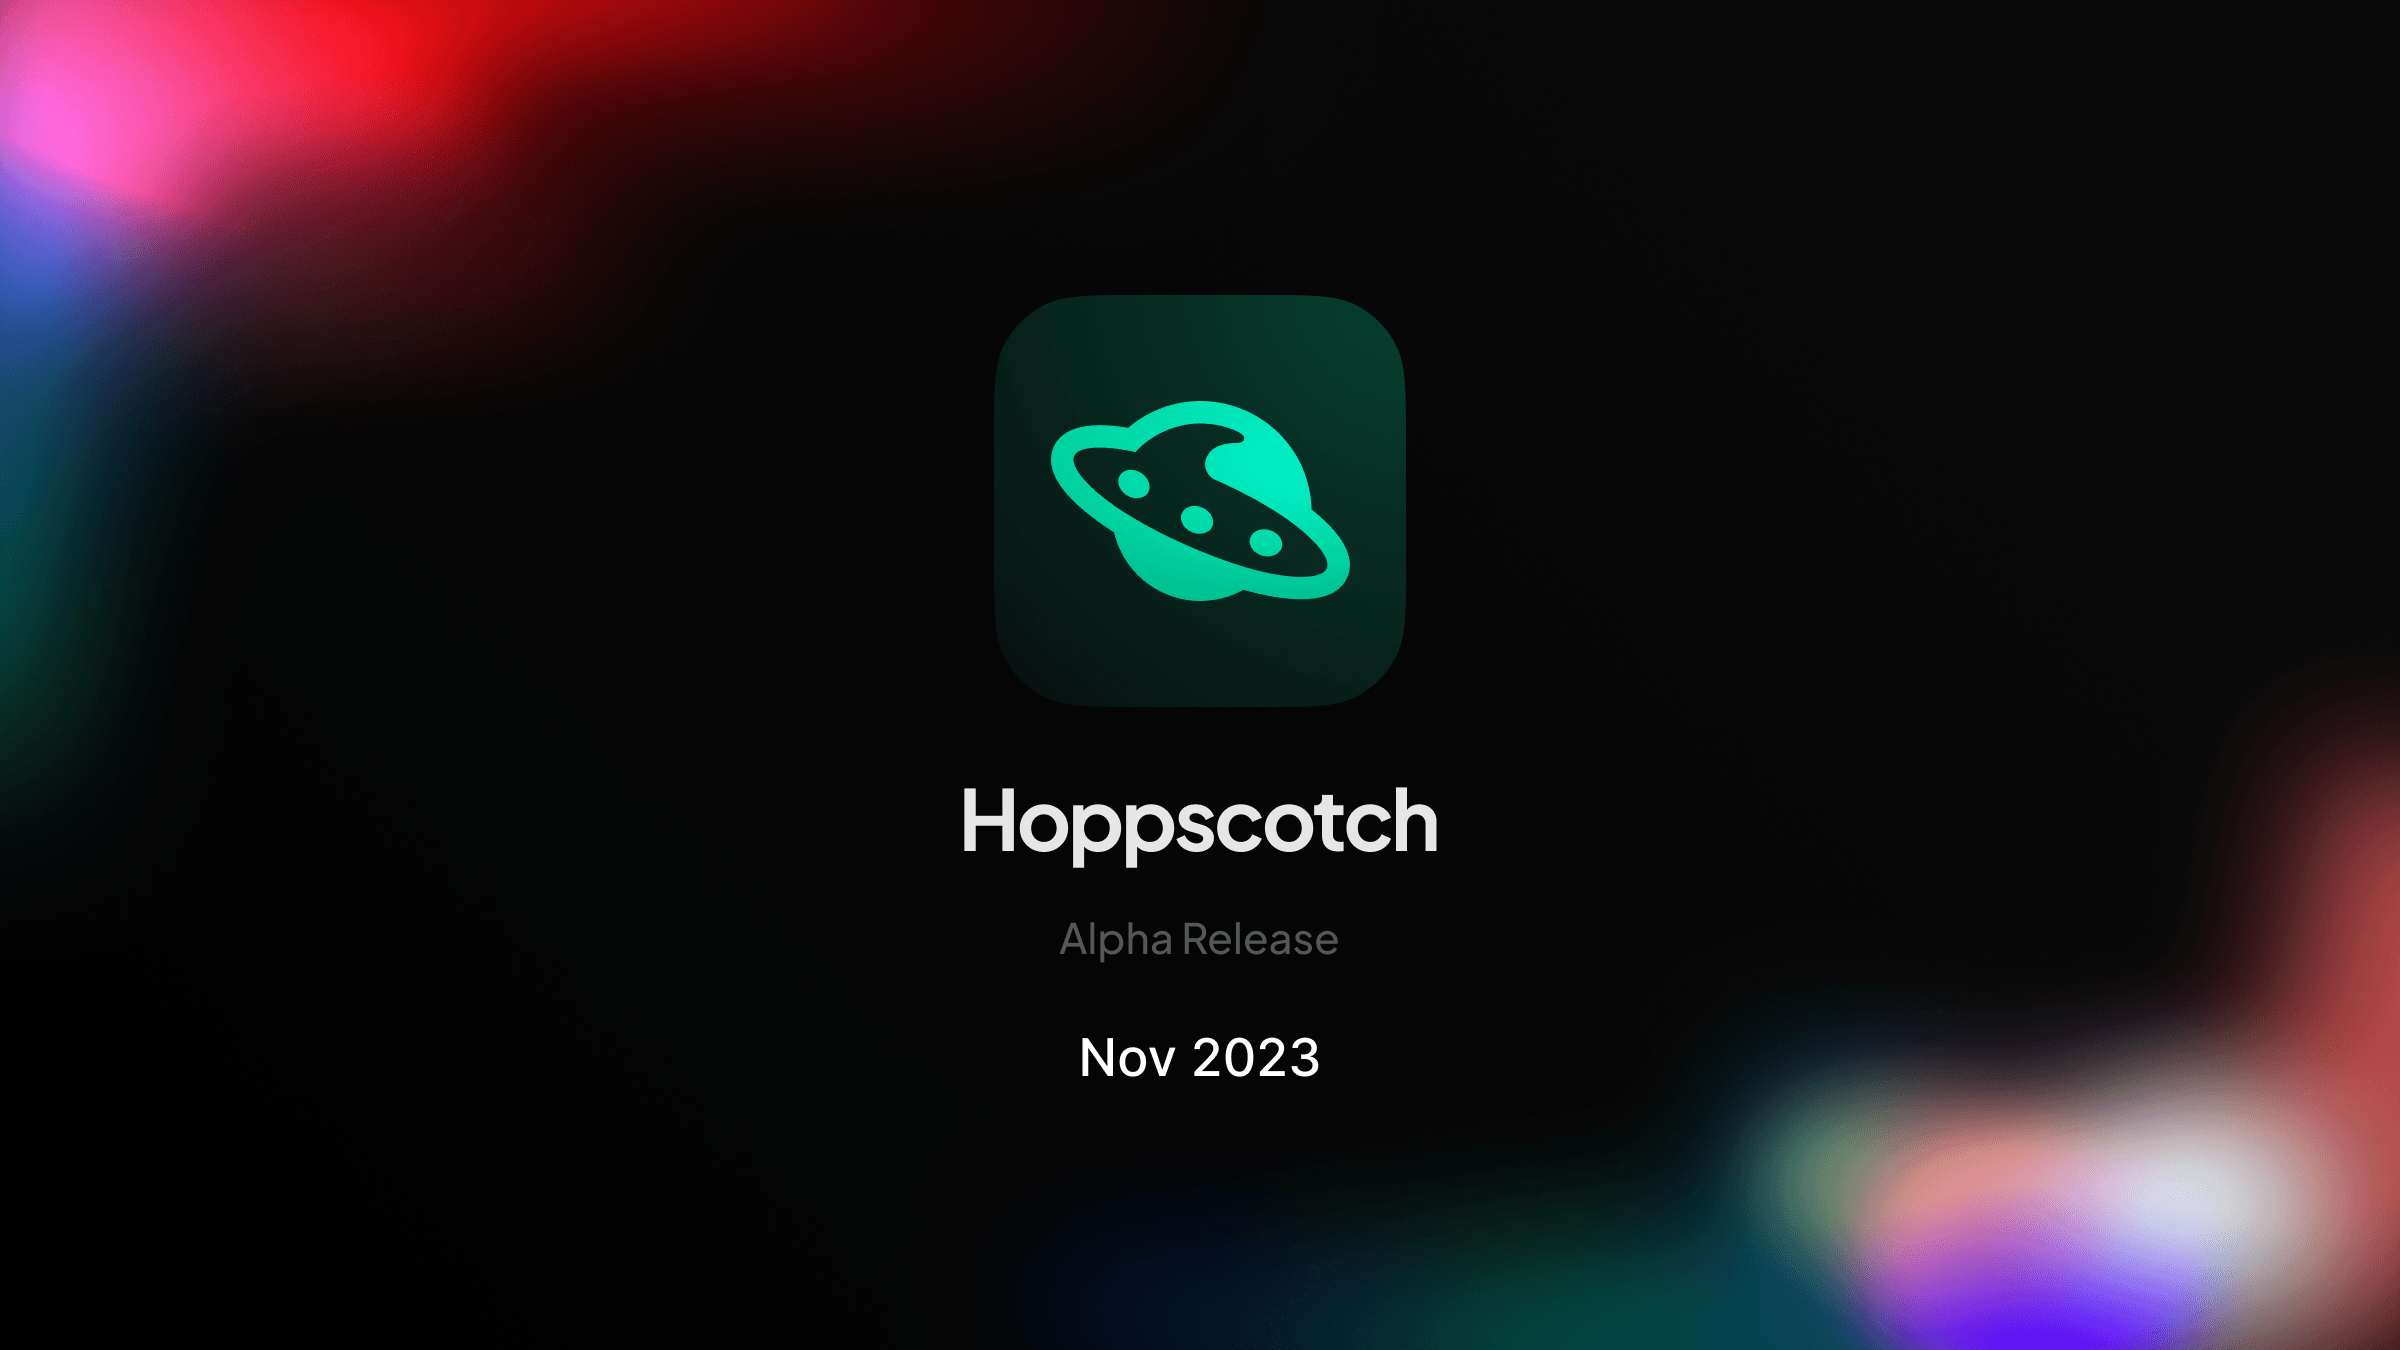 Introducing Hoppscotch Desktop Application